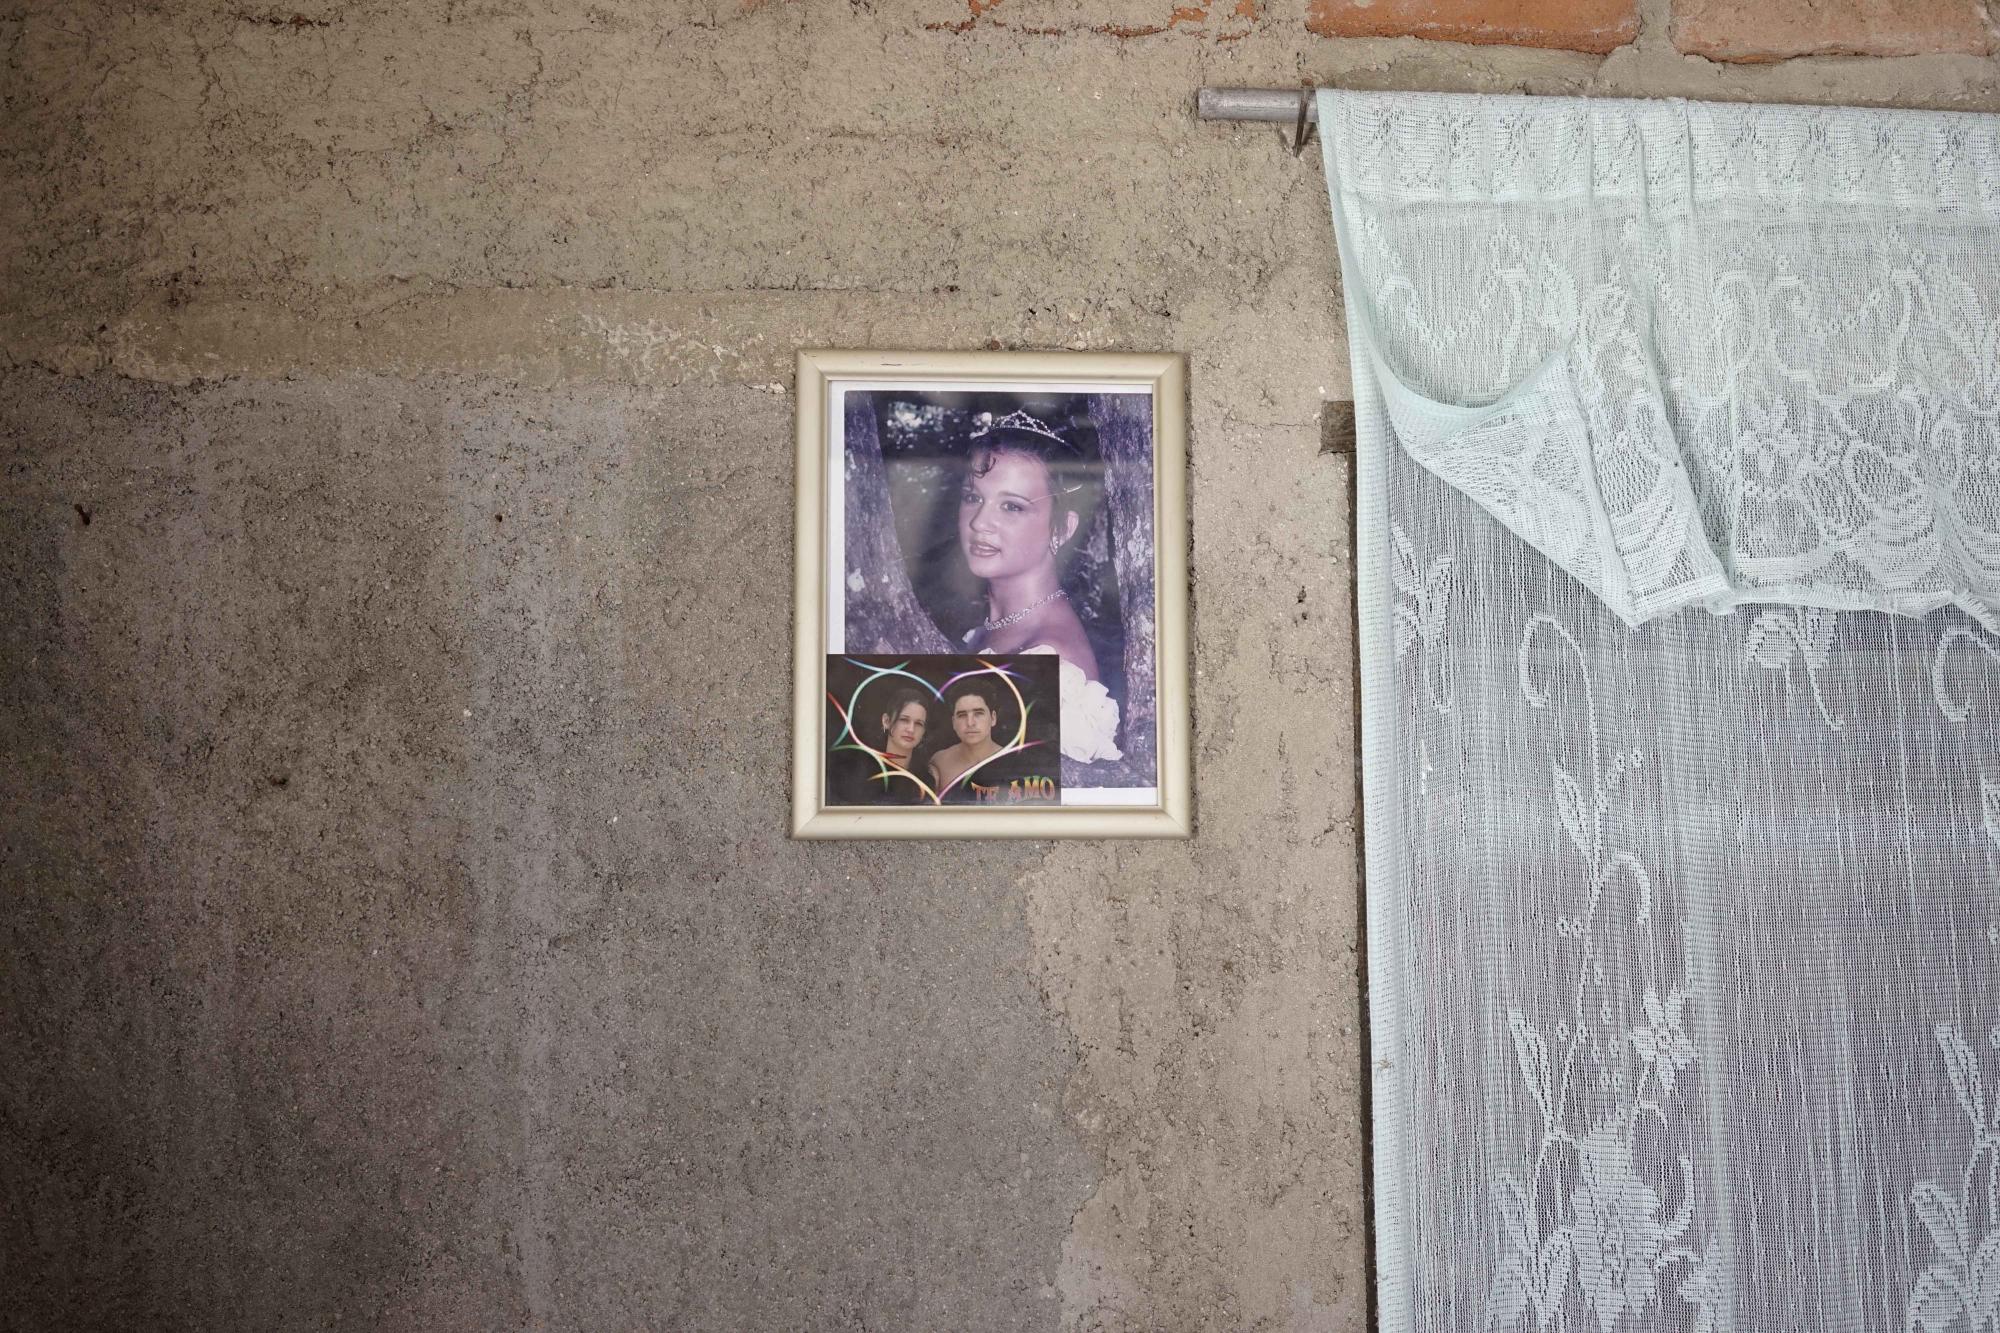 Esta fotografía del 23 de septiembre de 2015 muestra el retrato de Yainis Souto cuando tenía 15 años, así como una foto de su novio de esa época, José Fuentes Lastre, dentro de la casa de ella en Camagüey, Cuba. Souto y Lastre pusieron fin a su noviazgo mientras intentaban mantener una relación a larga distancia, en la que Lastre vivía en Estados Unidos y Souto seguía en el vecindario Porvenir donde ambos pasaron su infancia.